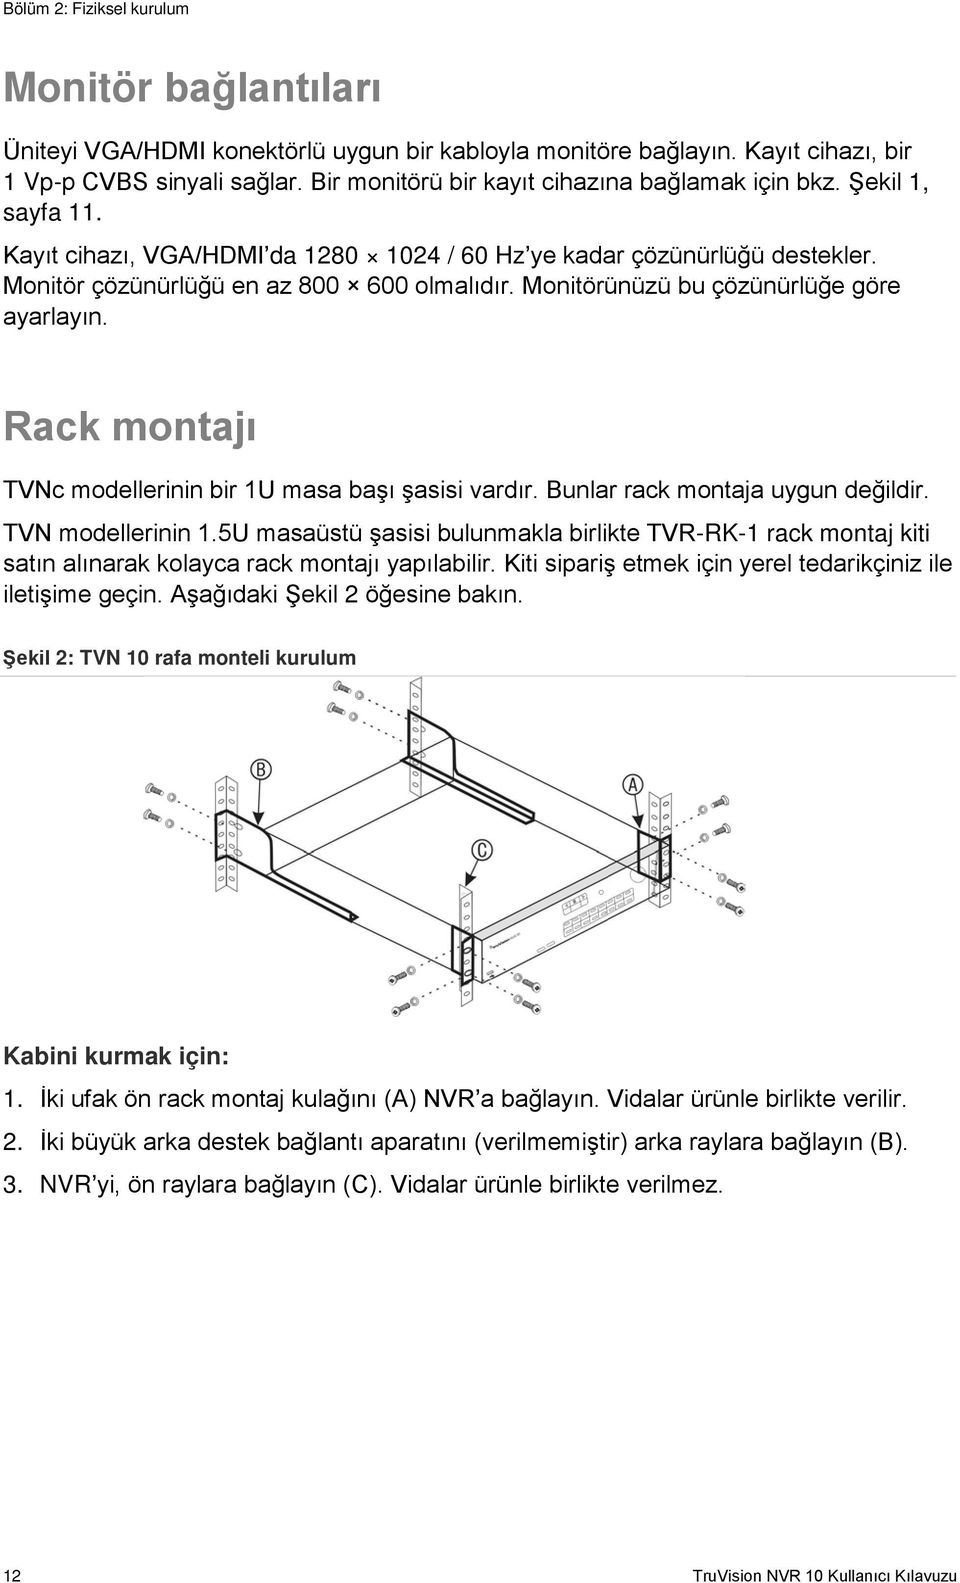 Monitörünüzü bu çözünürlüğe göre ayarlayın. Rack montajı TVNc modellerinin bir 1U masa başı şasisi vardır. Bunlar rack montaja uygun değildir. TVN modellerinin 1.